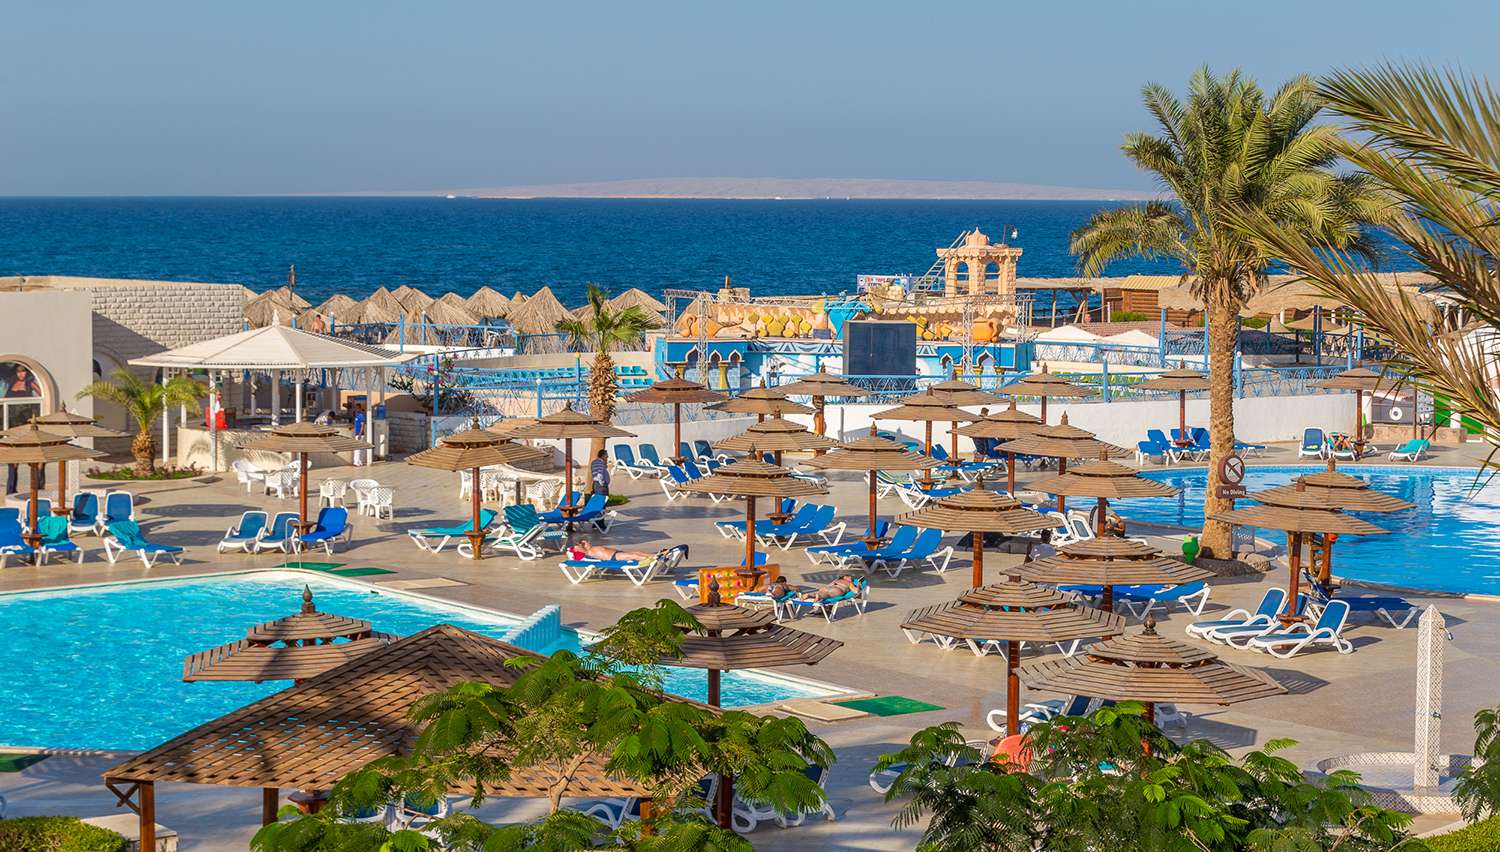 اقوي عروض فندق علاء الدين بيتش ريزورت الغردقة - عروض فنادق الغردقة 2021 - 2022 | Aladdin Beach Resort